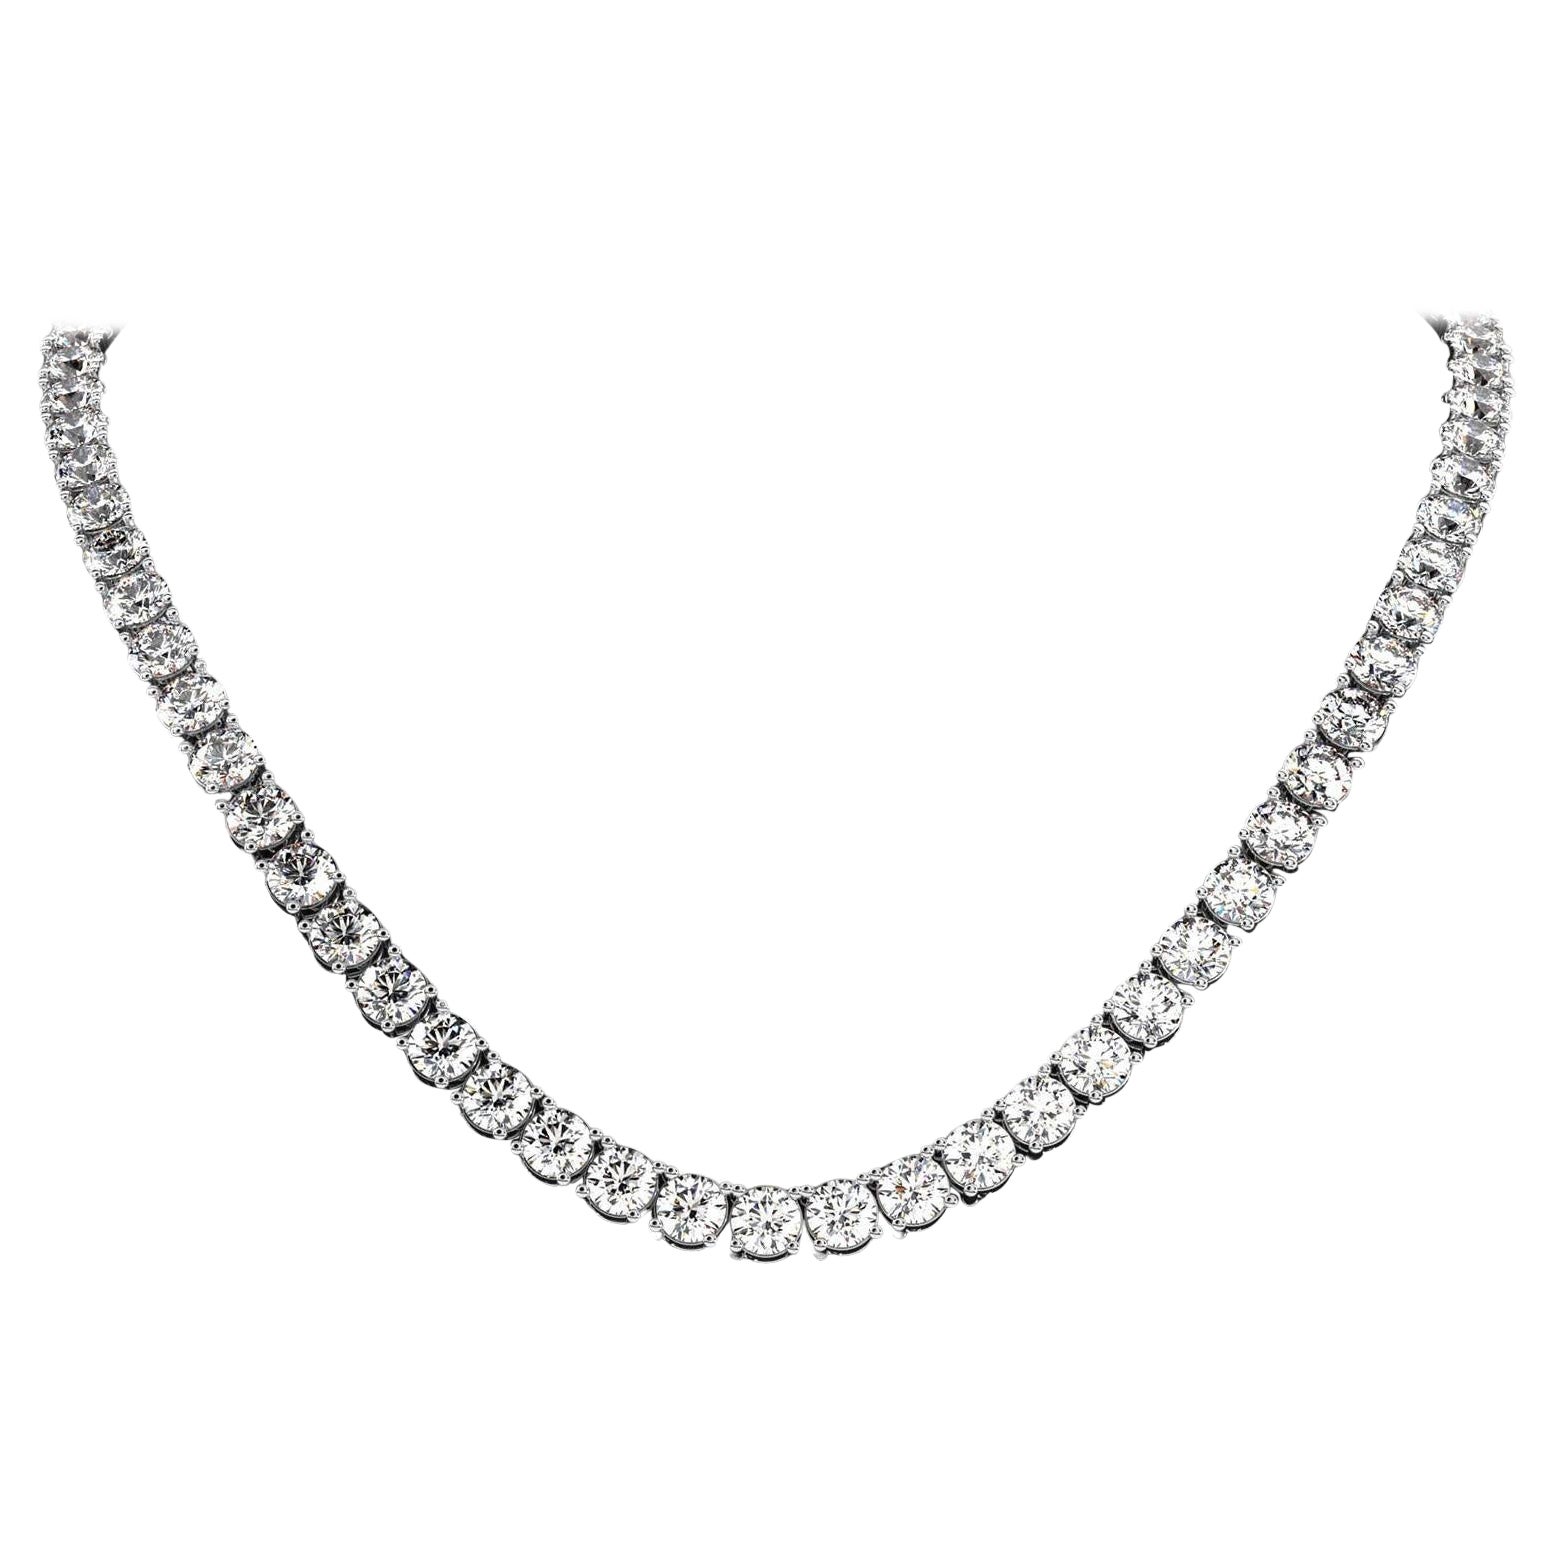 25 Carat Diamond Tennis Necklace For Sale